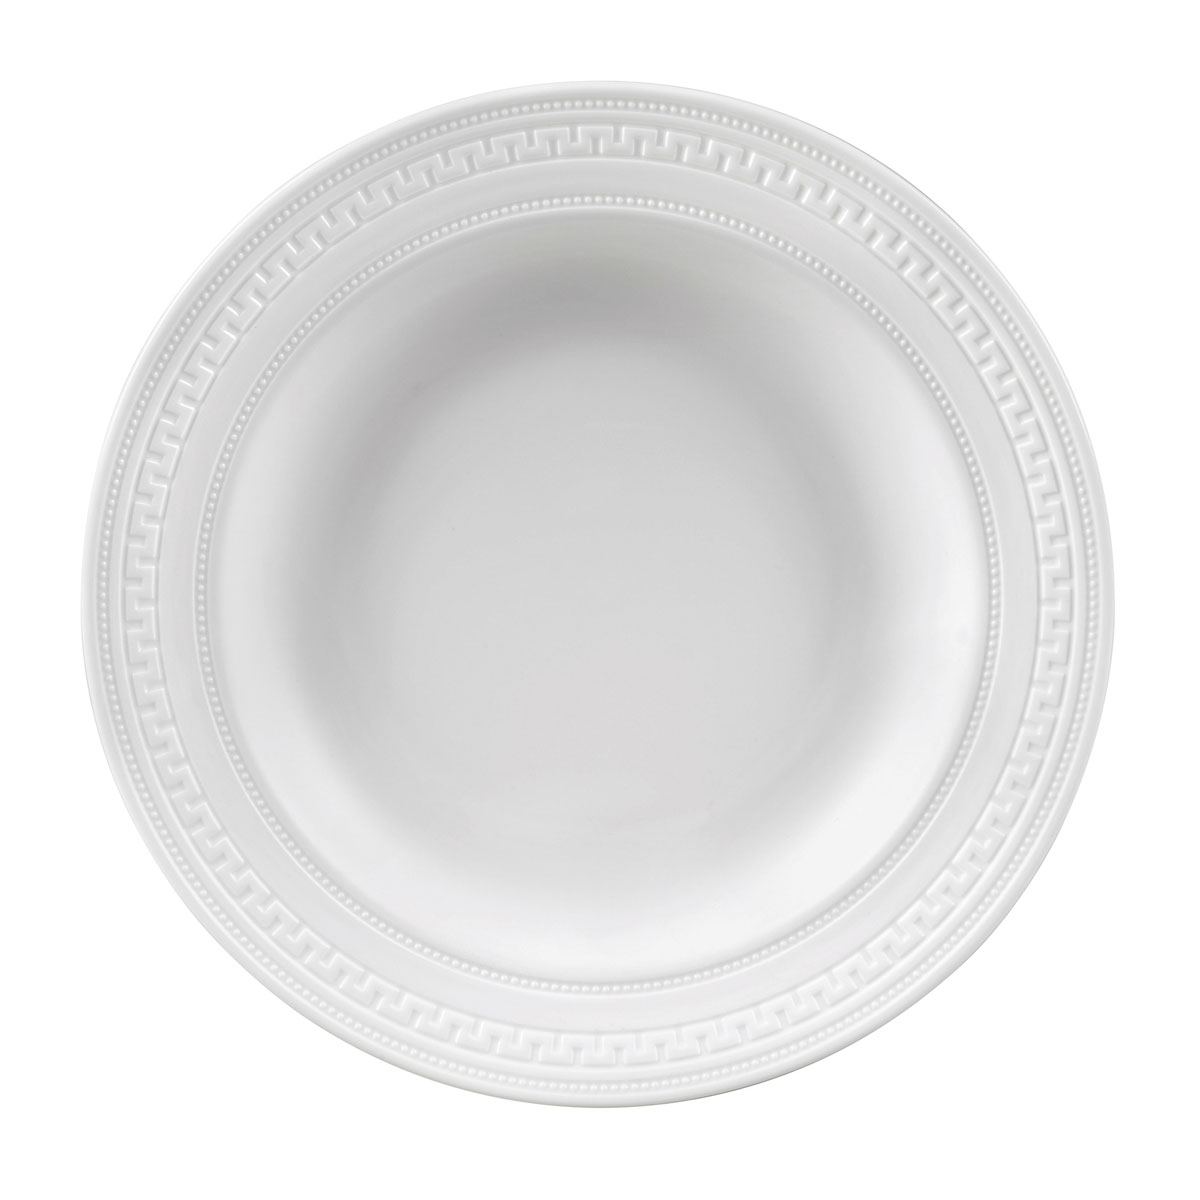 Тарелка суповая Wedgwood Intaglio 23 см тарелка суповая churchill eglomise 23 см